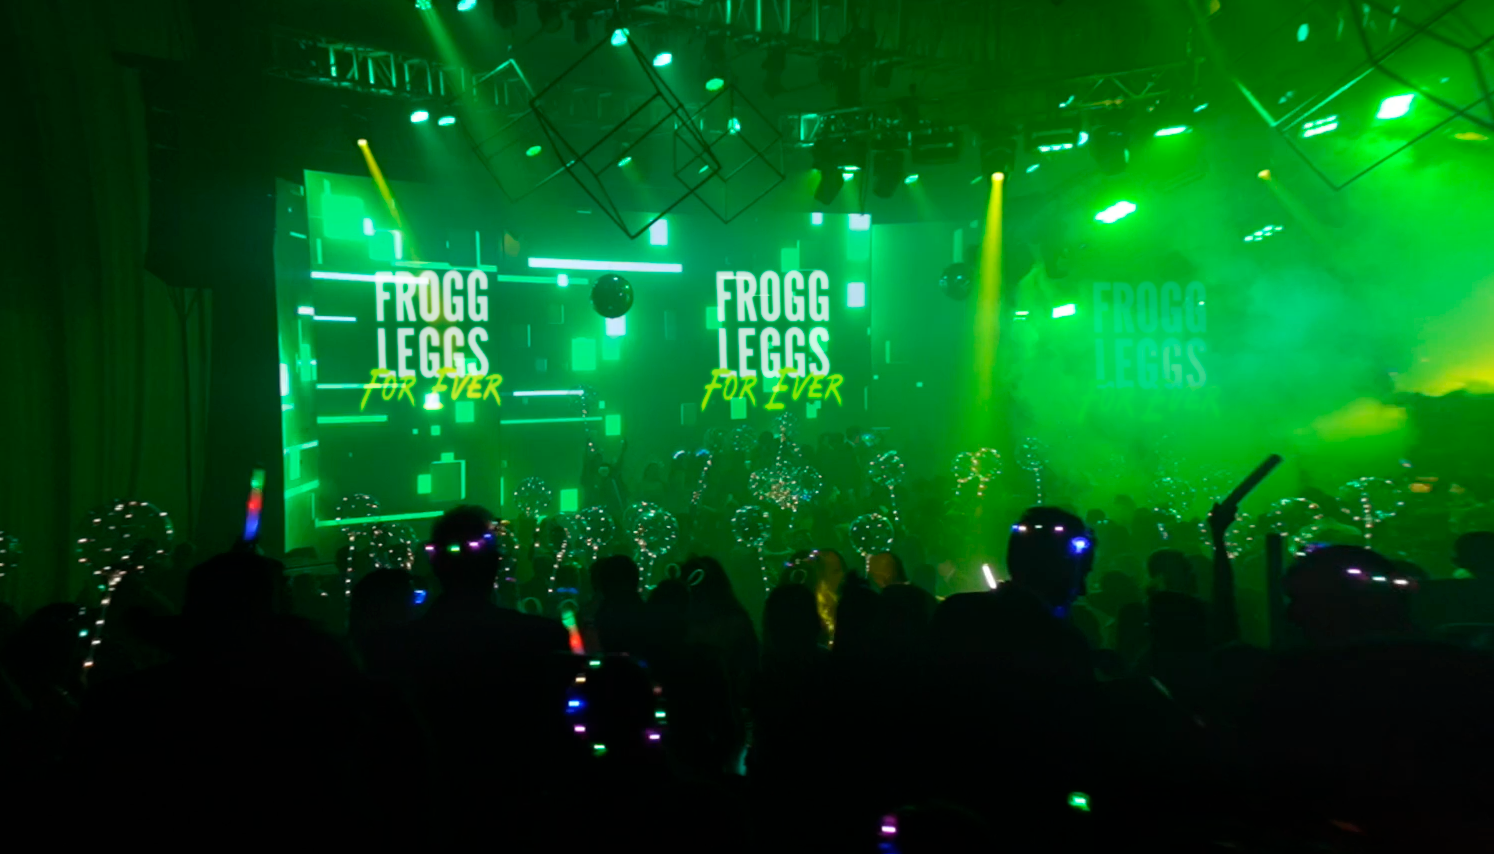 ‘Frogg Legg’s Forever’.